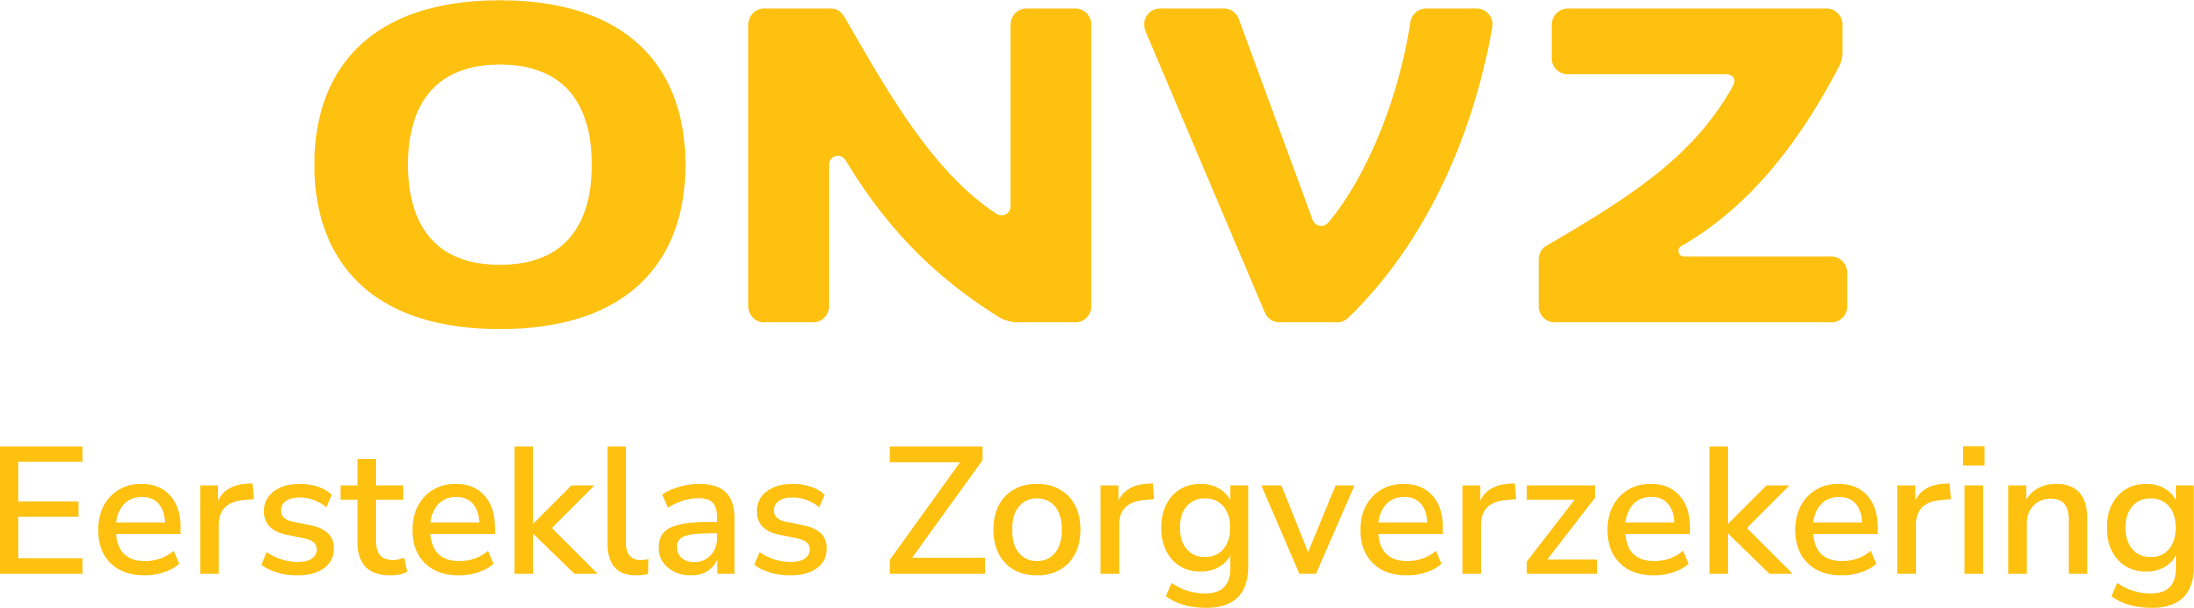 ONVZ logo